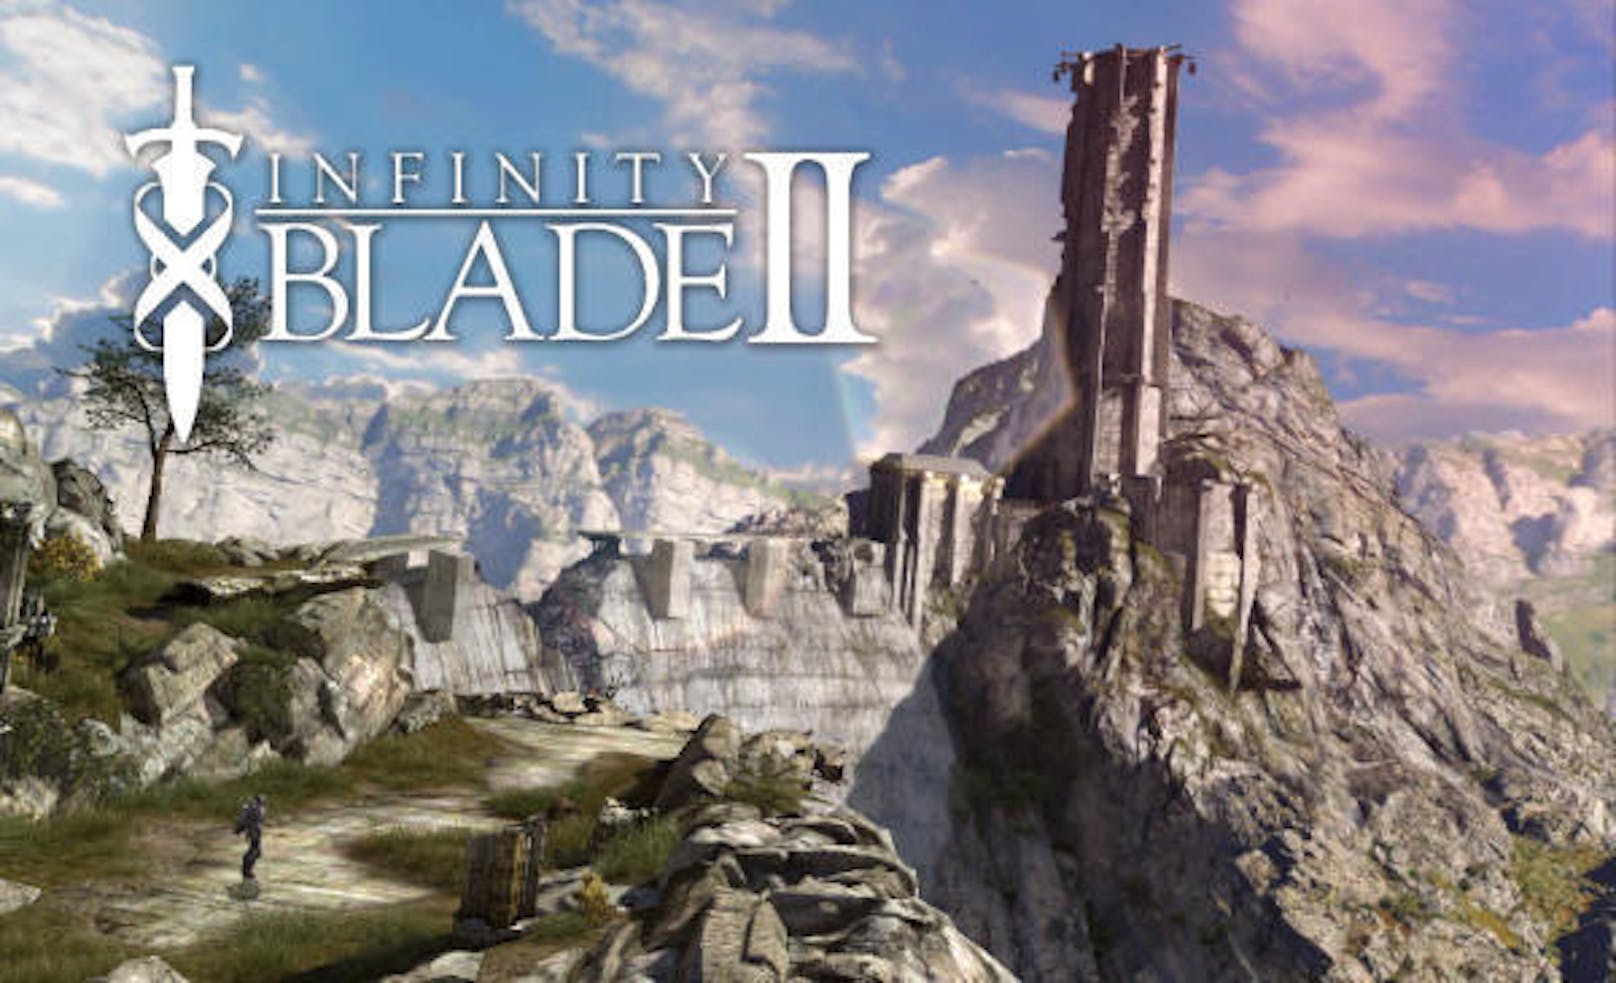 <b>2011 und 2013</b> folgten die Nachfolger von "Infinity Blade". Obwohl Epic Games zu dieser Zeit mit der "Gears of War"-Serie immer noch an AAA-Titeln arbeitete, zeichnet sich hier erneut eine Verlagerung ab. Epic Games verkauft Games wieder erfolgreich direkt an die Kunden.